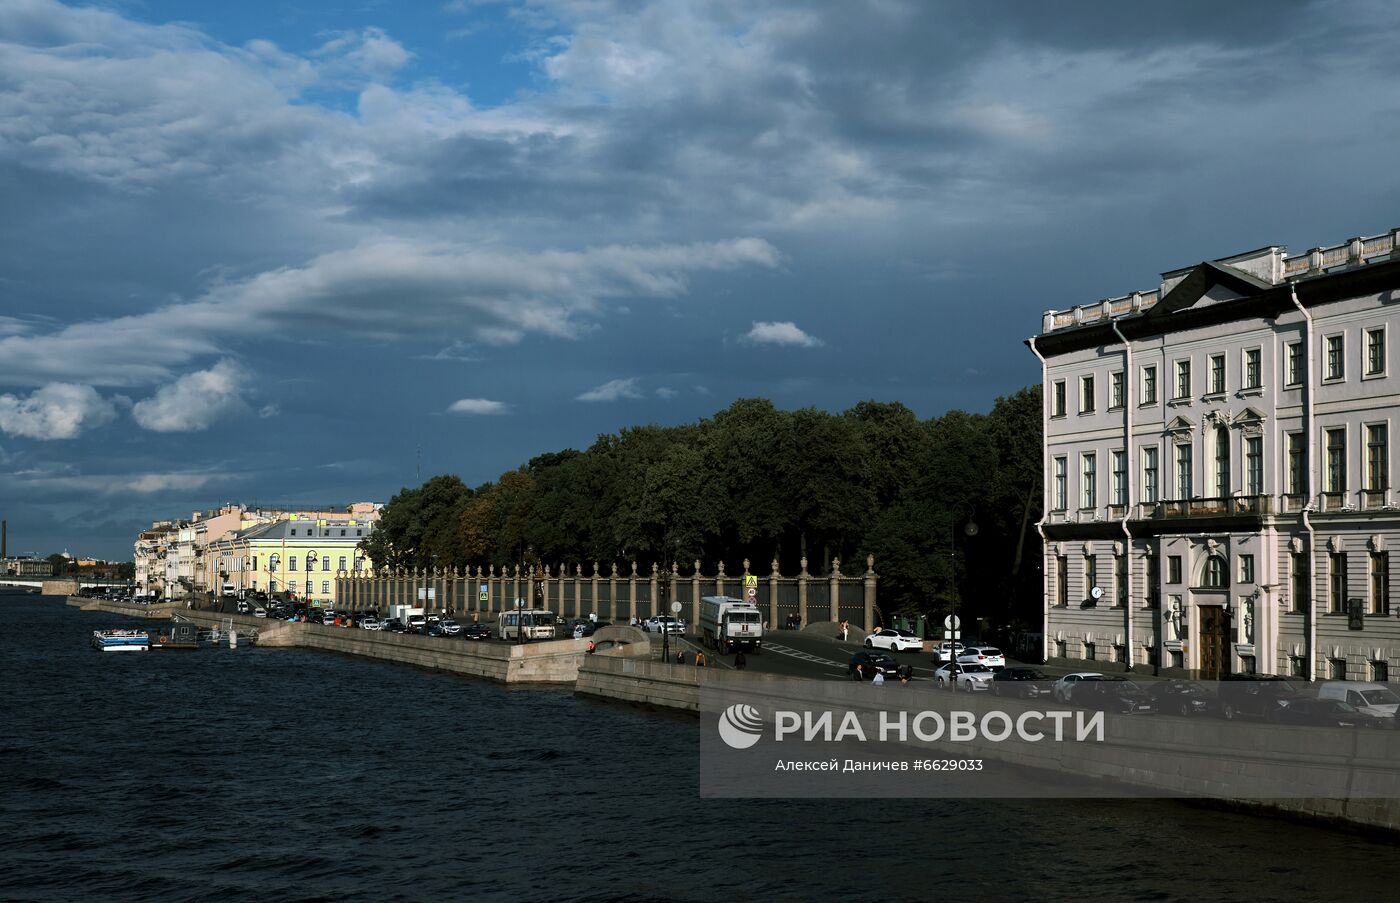 Пасмурная погода в Санкт-Петербурге